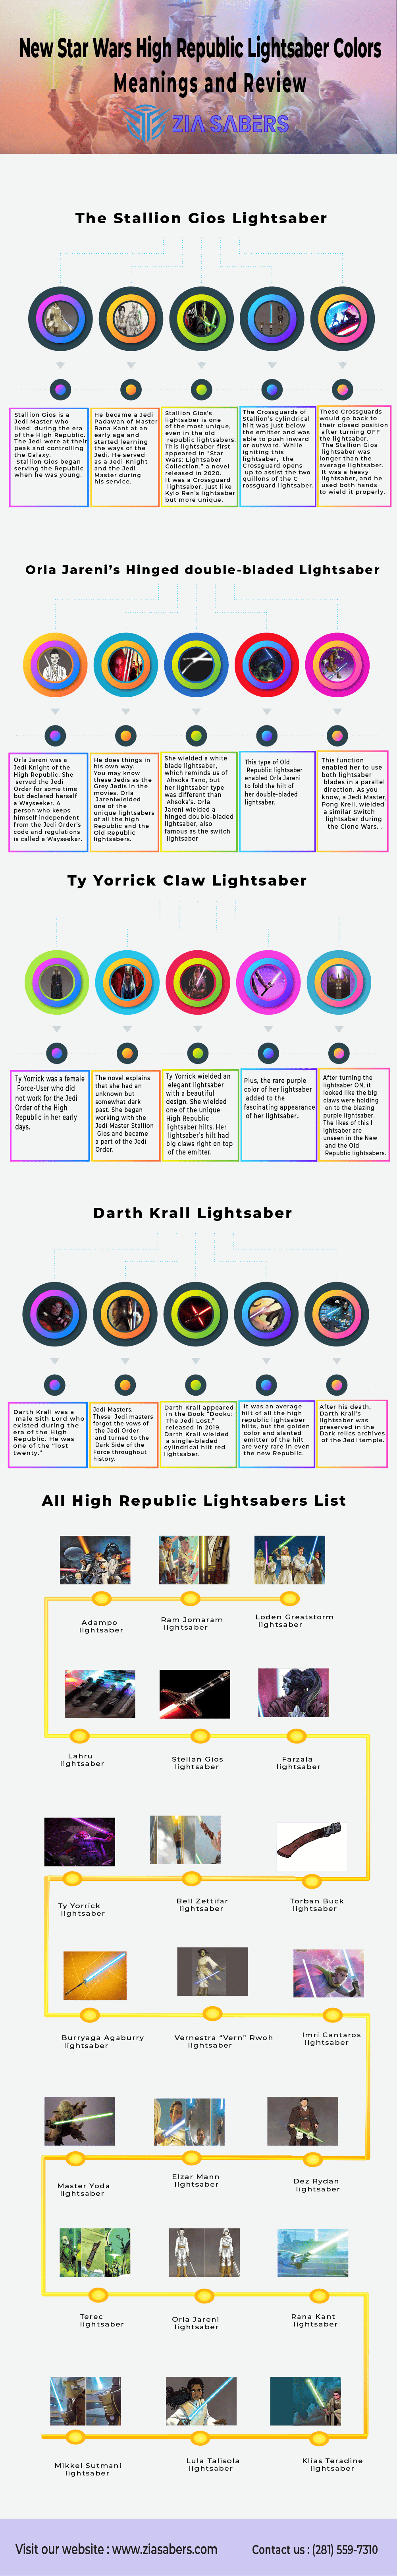 High Republic Lightsaber